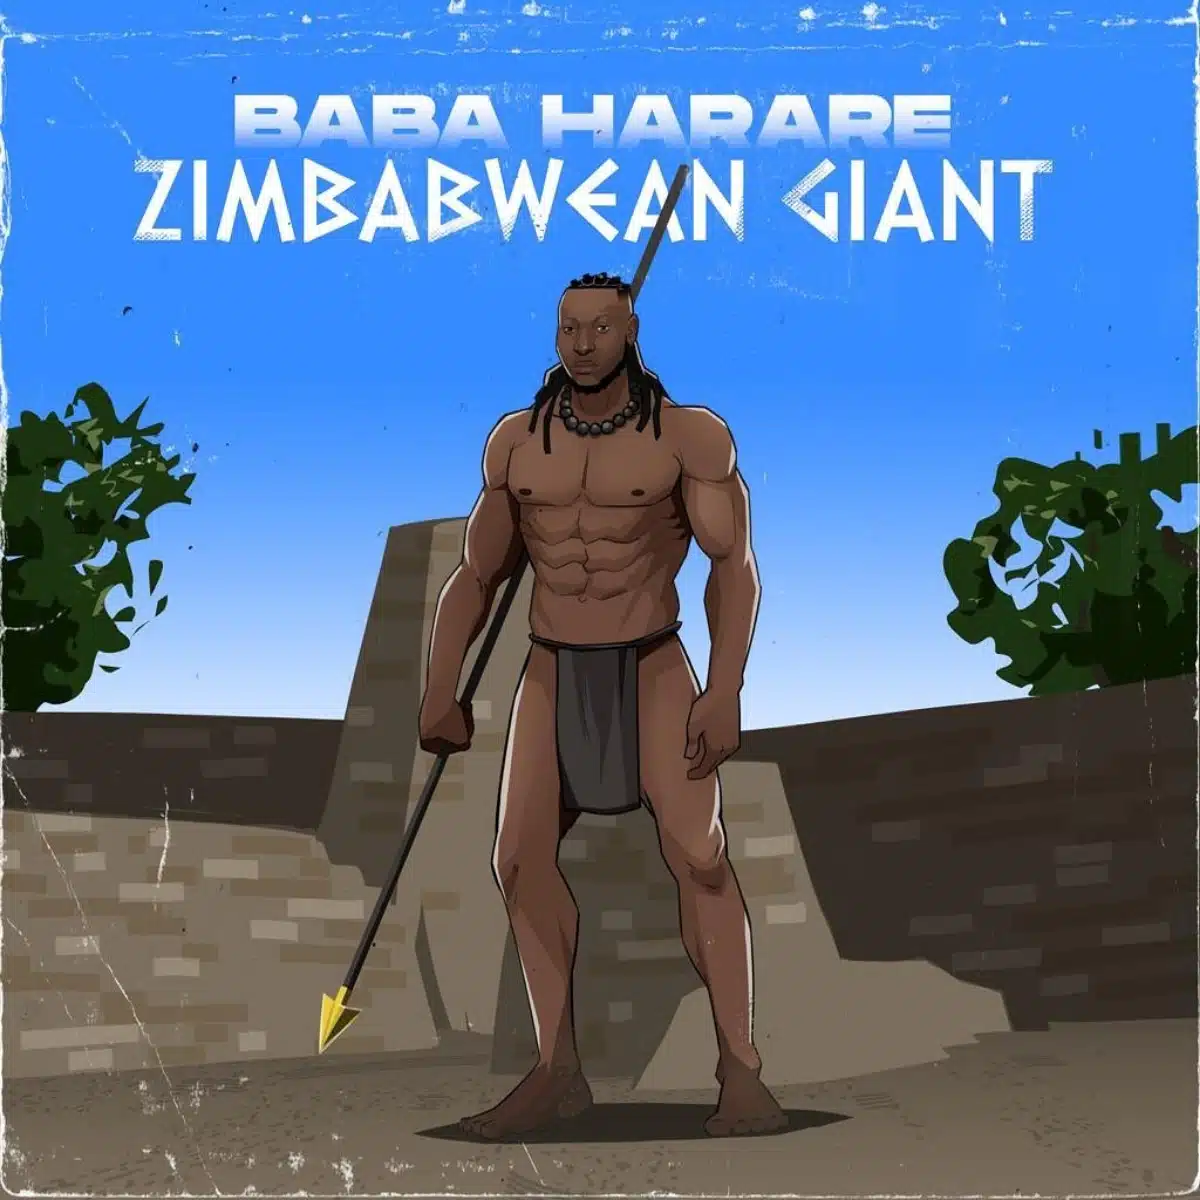 DOWNLOAD: Baba Harare Ft Blot – “Terera Mitemo” Mp3